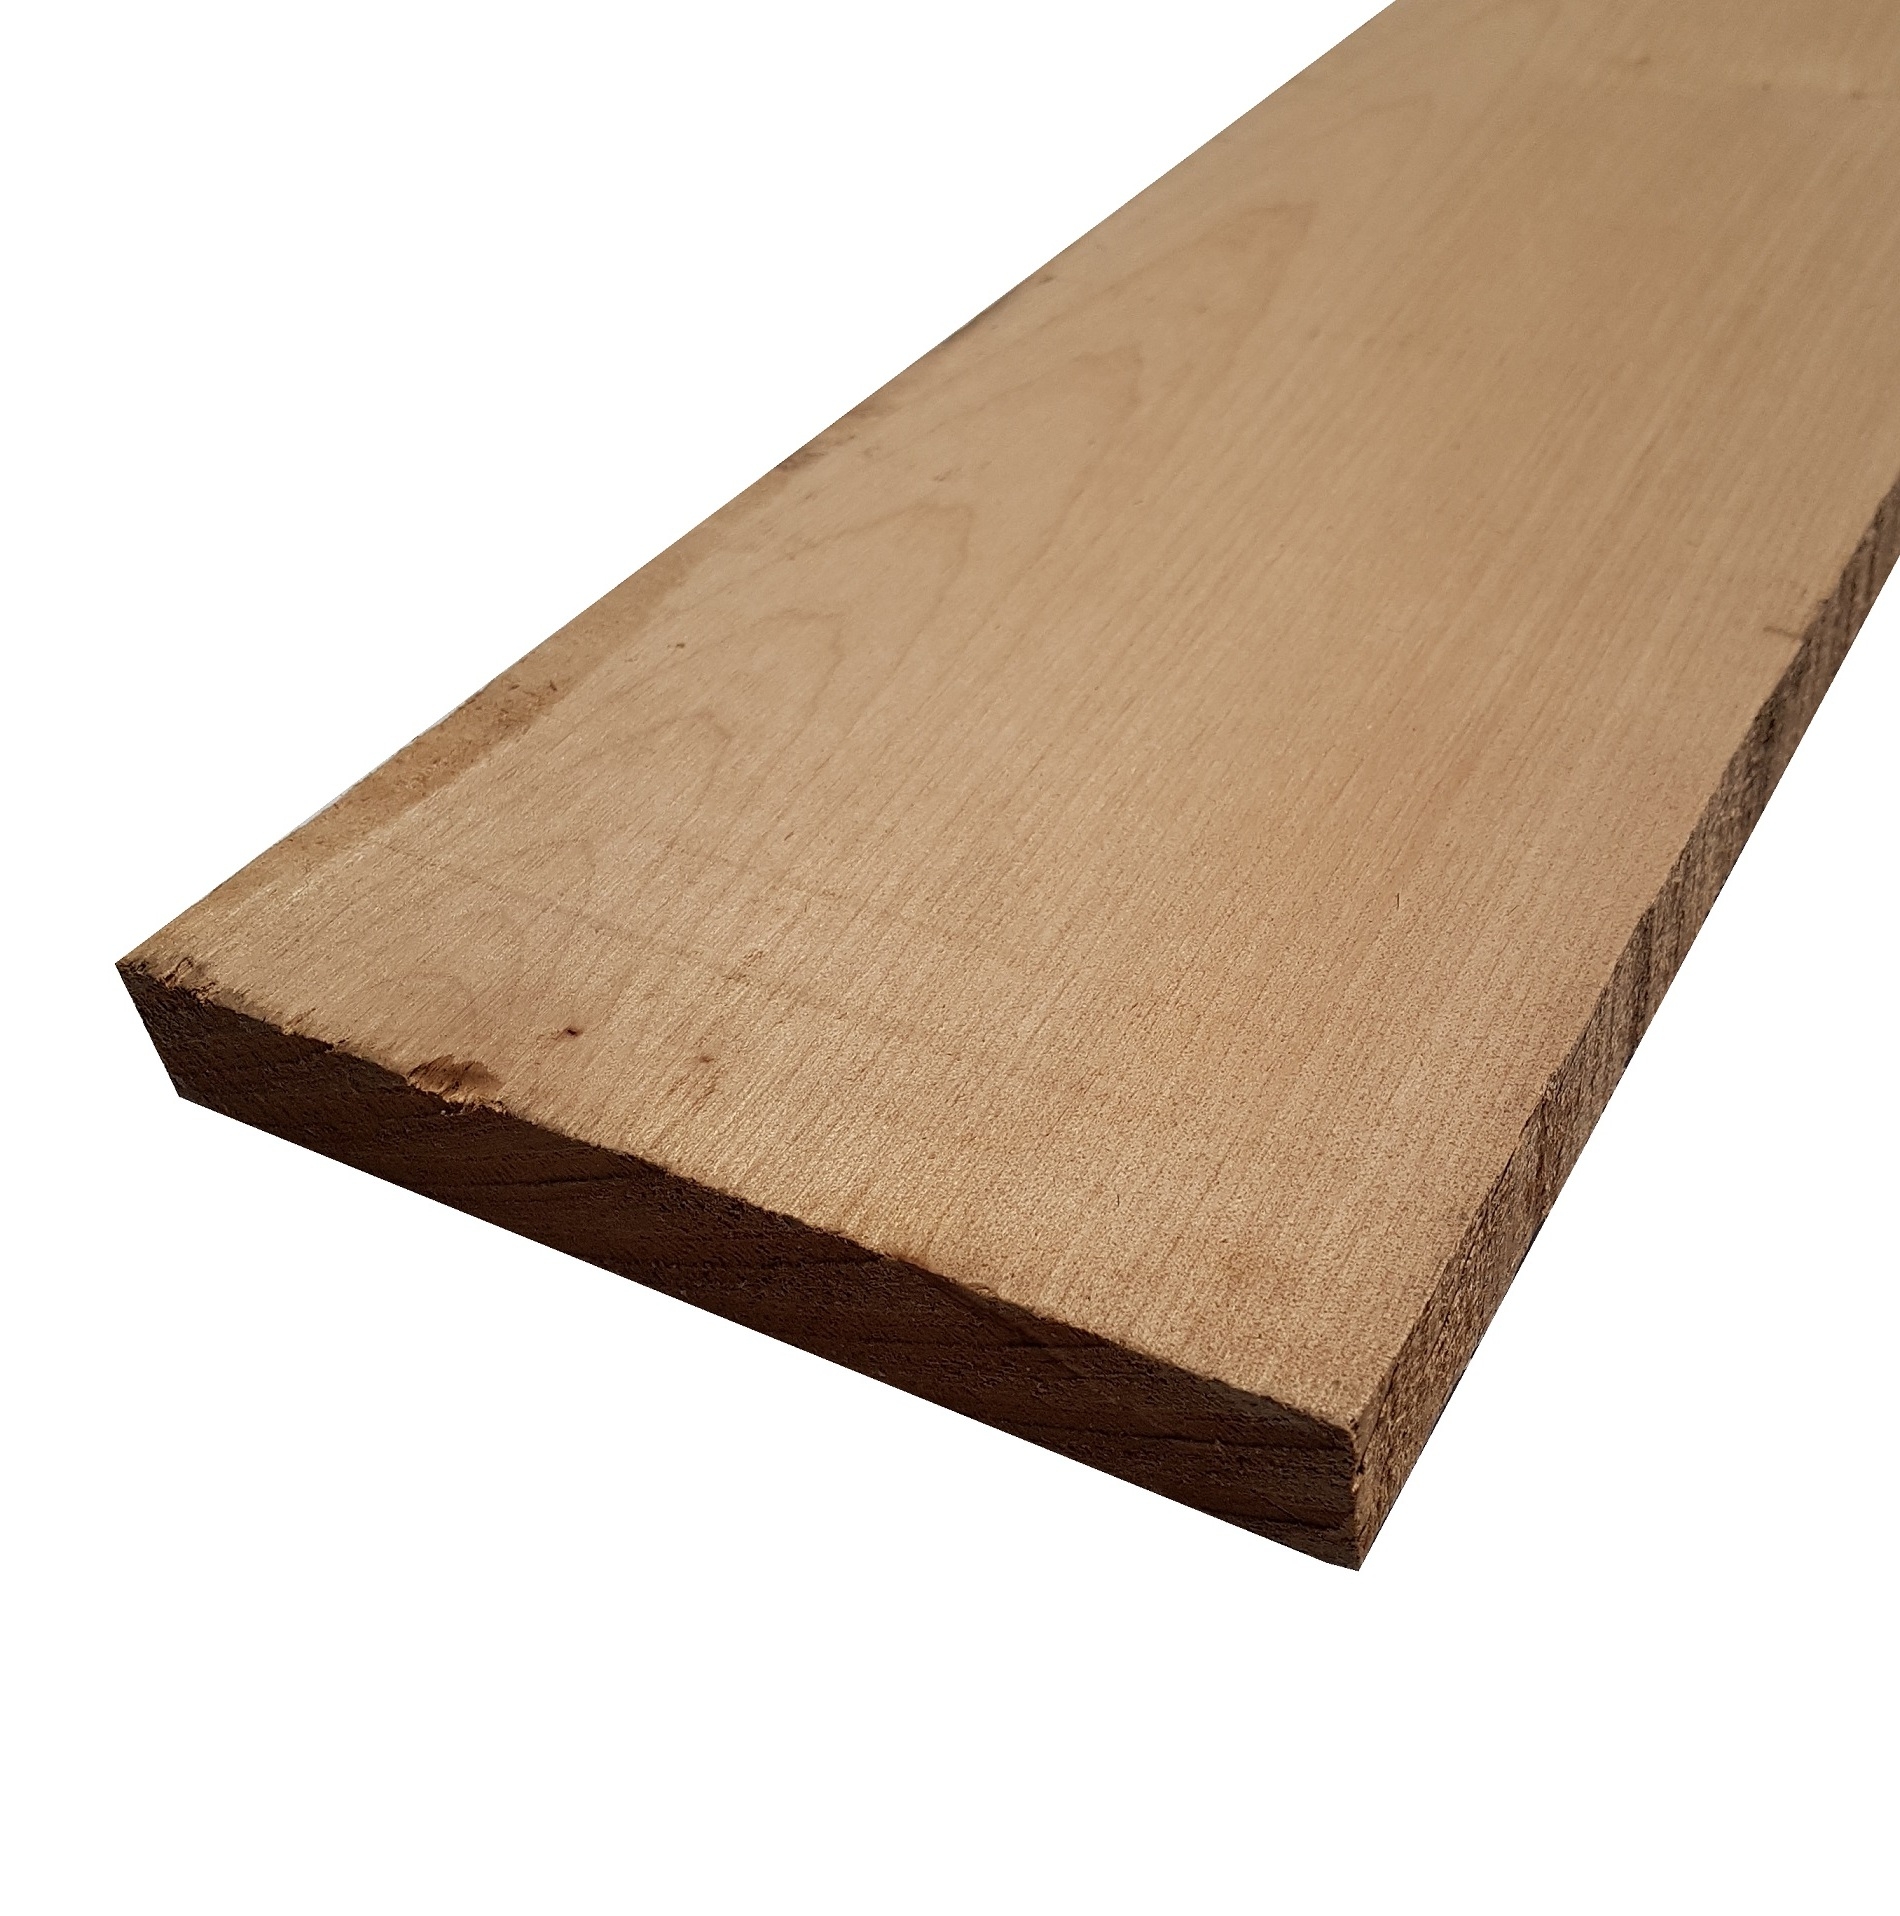 Tavola legno di Acero Pacific Coast Maple Calibrato refilato grezzo mm 38 x 140 x 2700